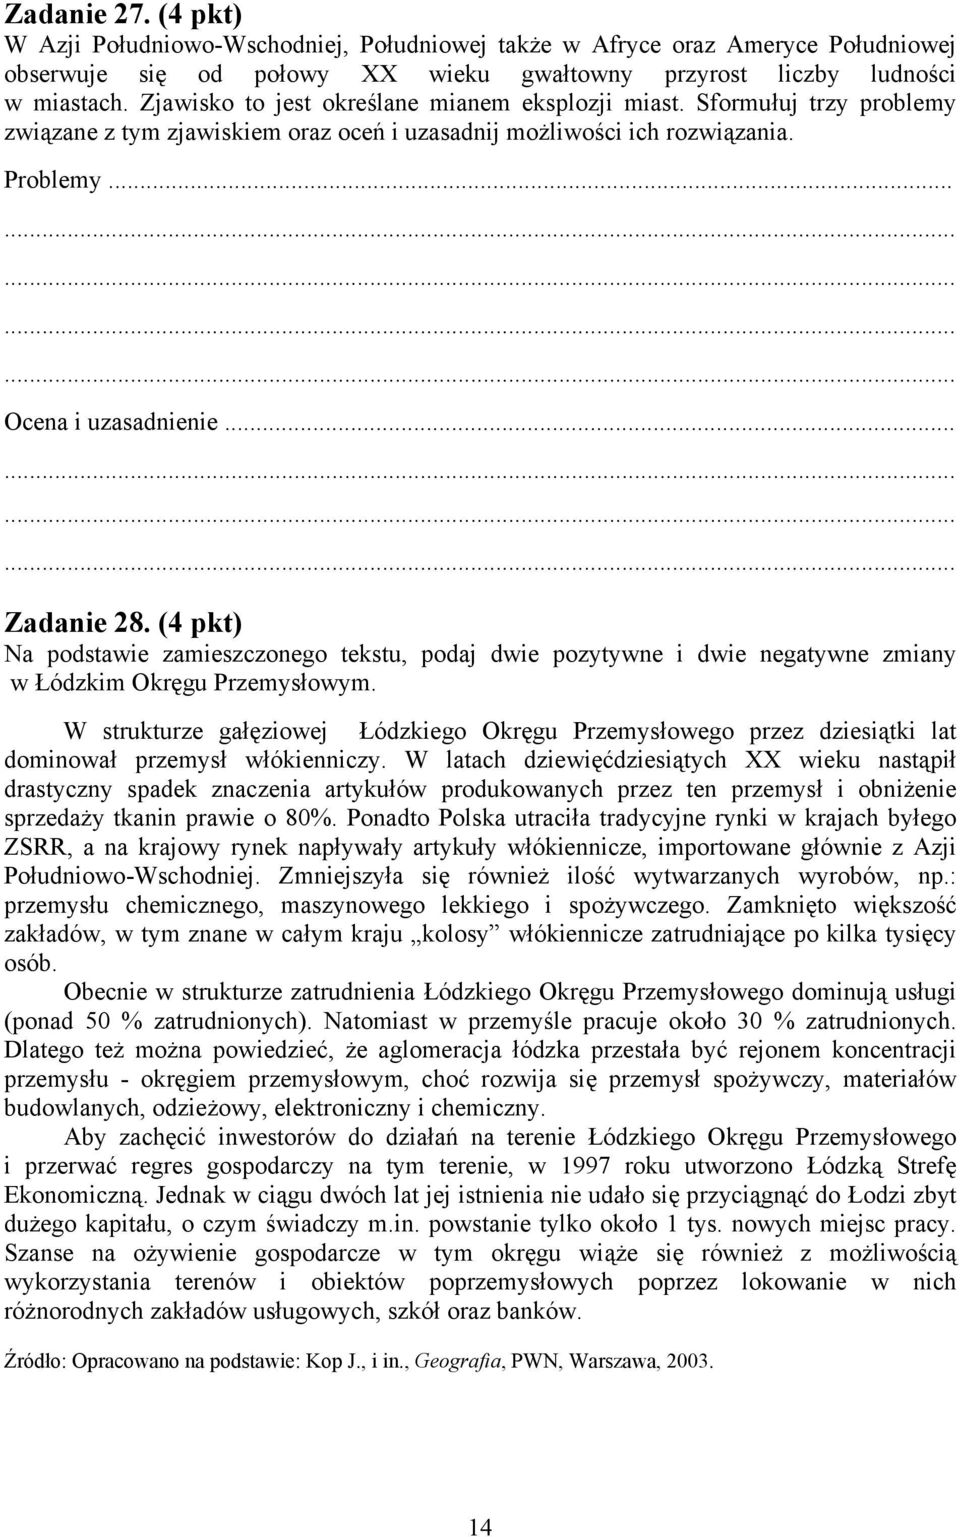 (4 pkt) Na podstawie zamieszczonego tekstu, podaj dwie pozytywne i dwie negatywne zmiany w Łódzkim Okręgu Przemysłowym.